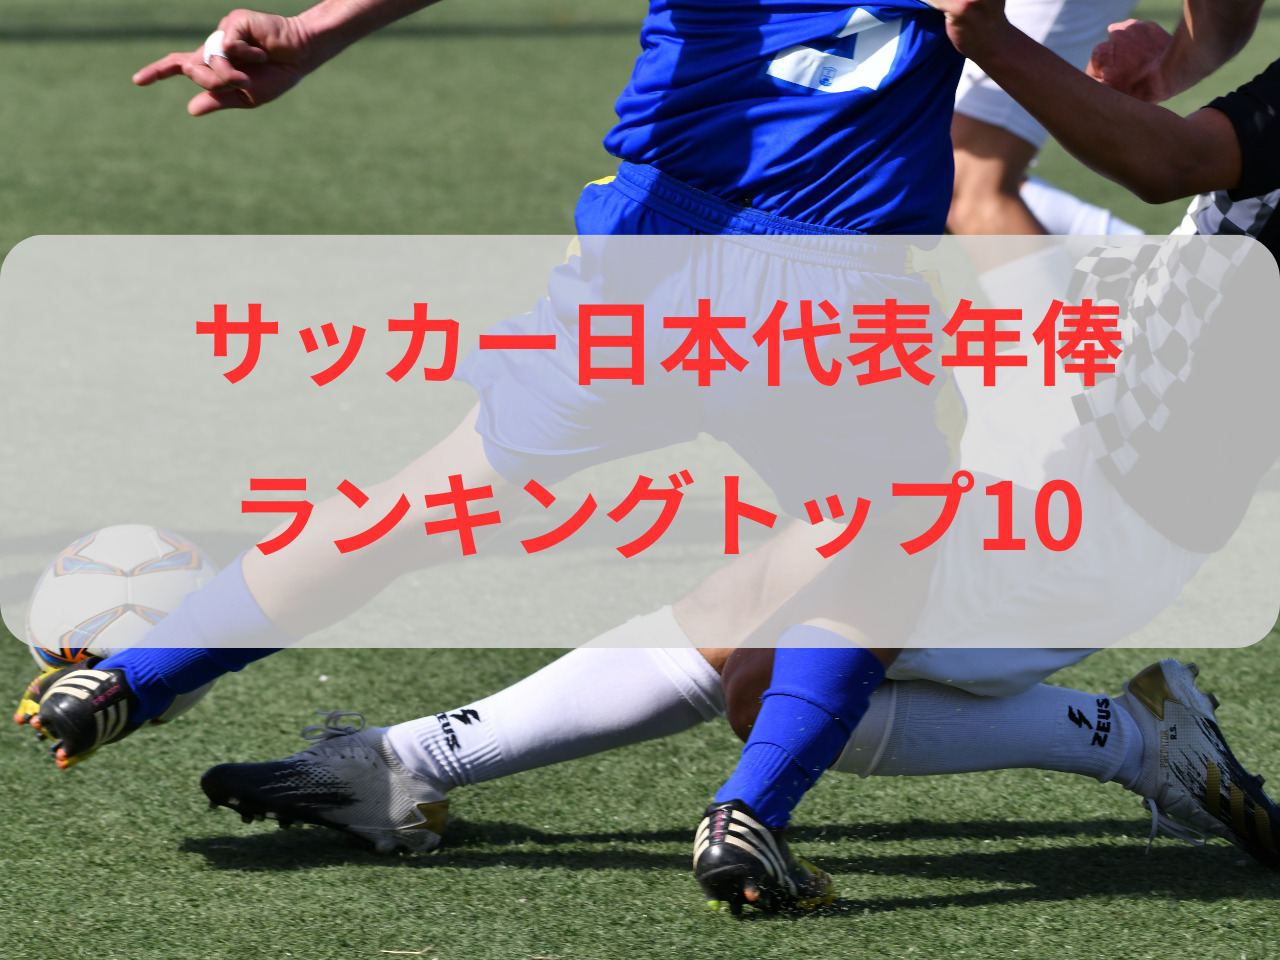 サッカー 年俸 ランキング 日本人